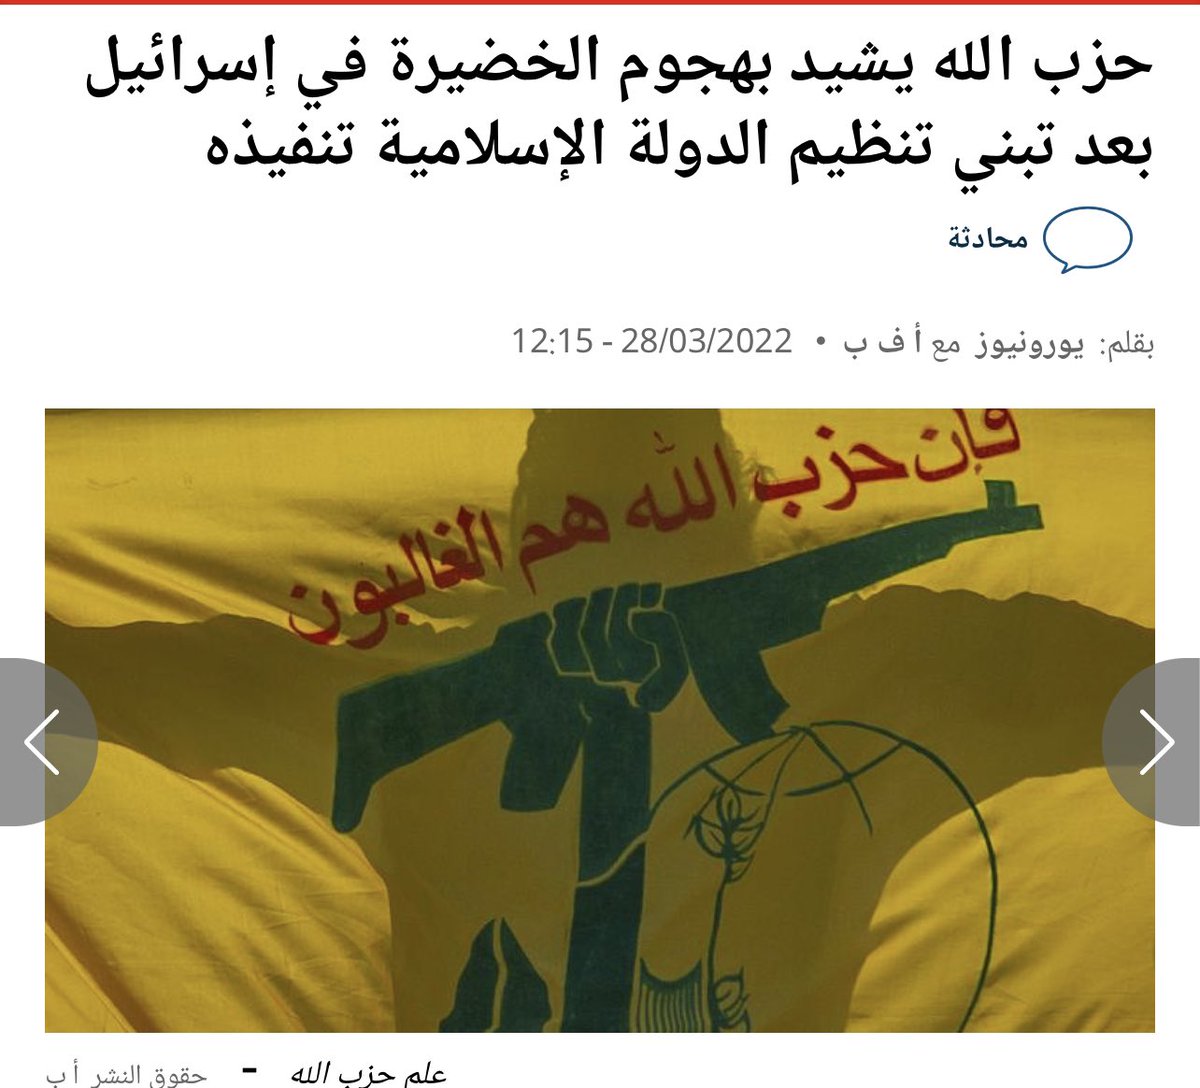 يبدو أن ما بين حزب الله و تنظيم الدولة علاقة تتخطى الهوية الإرهابية